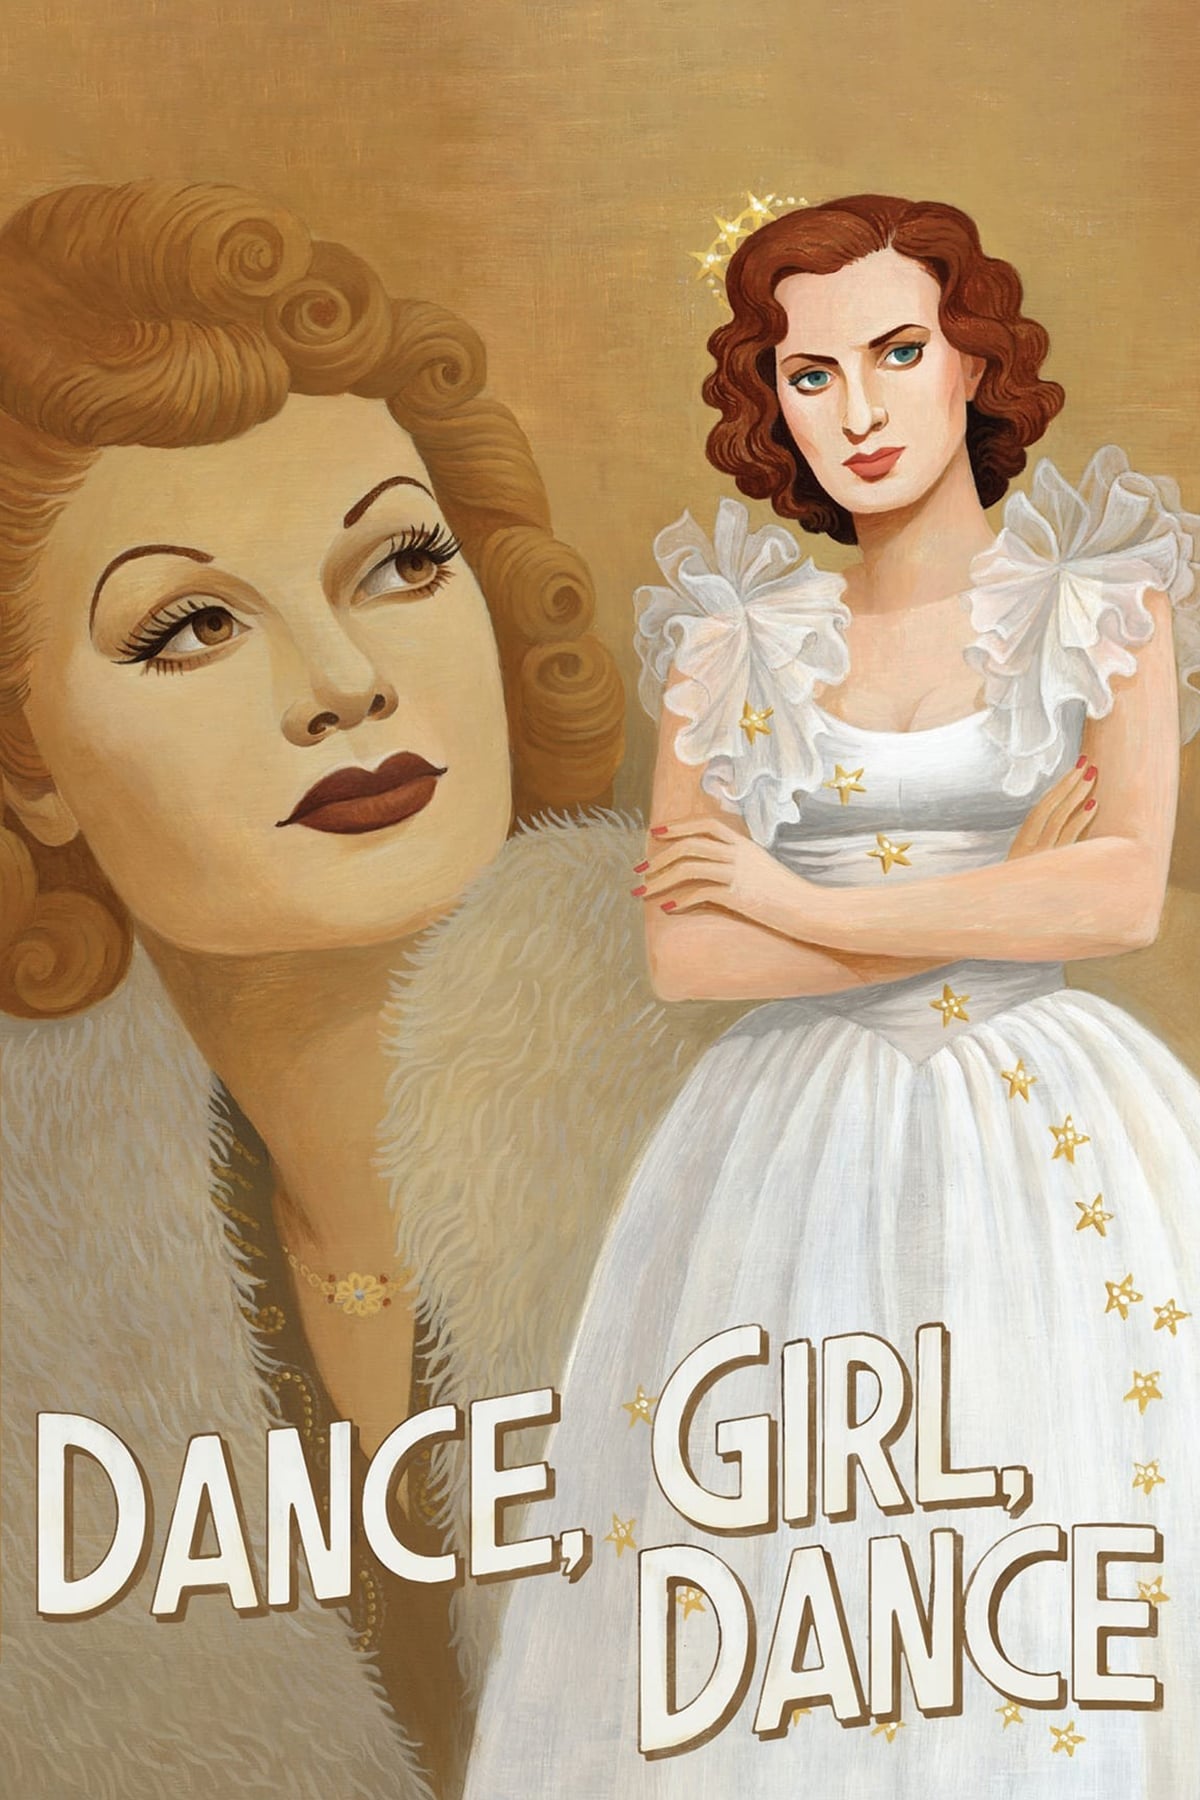 Baila, muchacha, baila (1940)